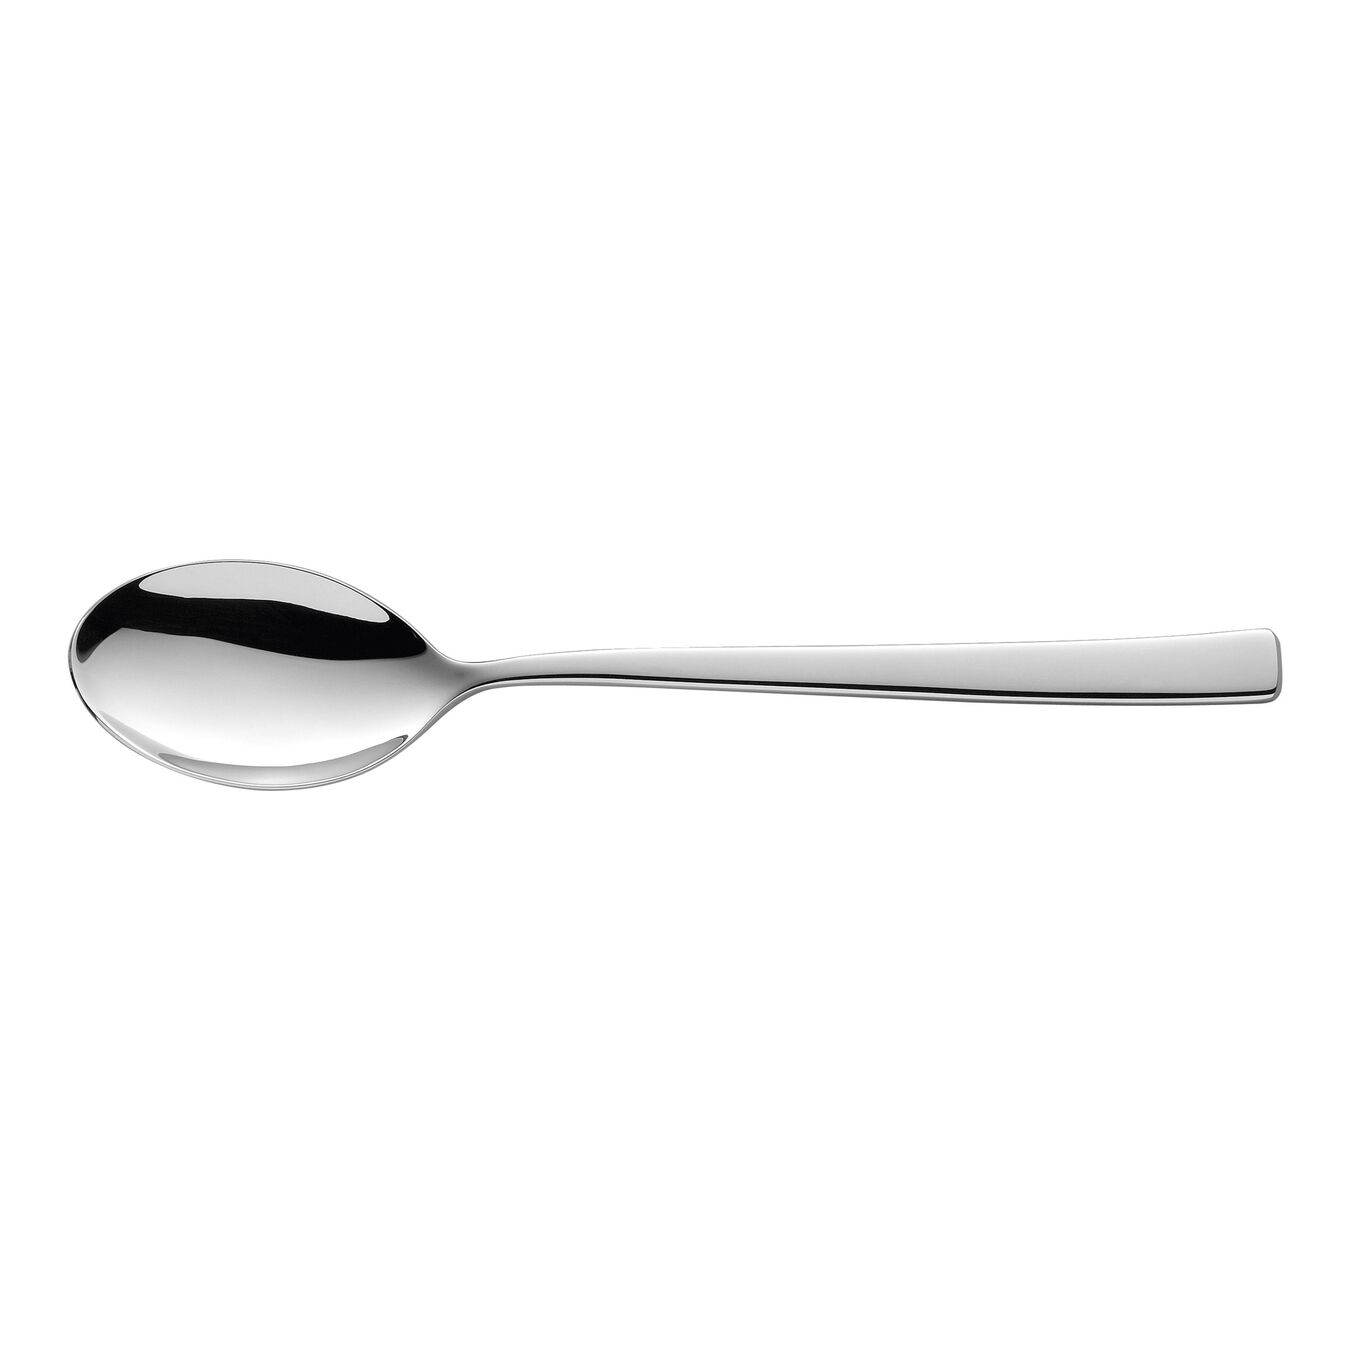 Cucchiaio - 20 cm, 18/10 acciaio inossidabile,,large 1